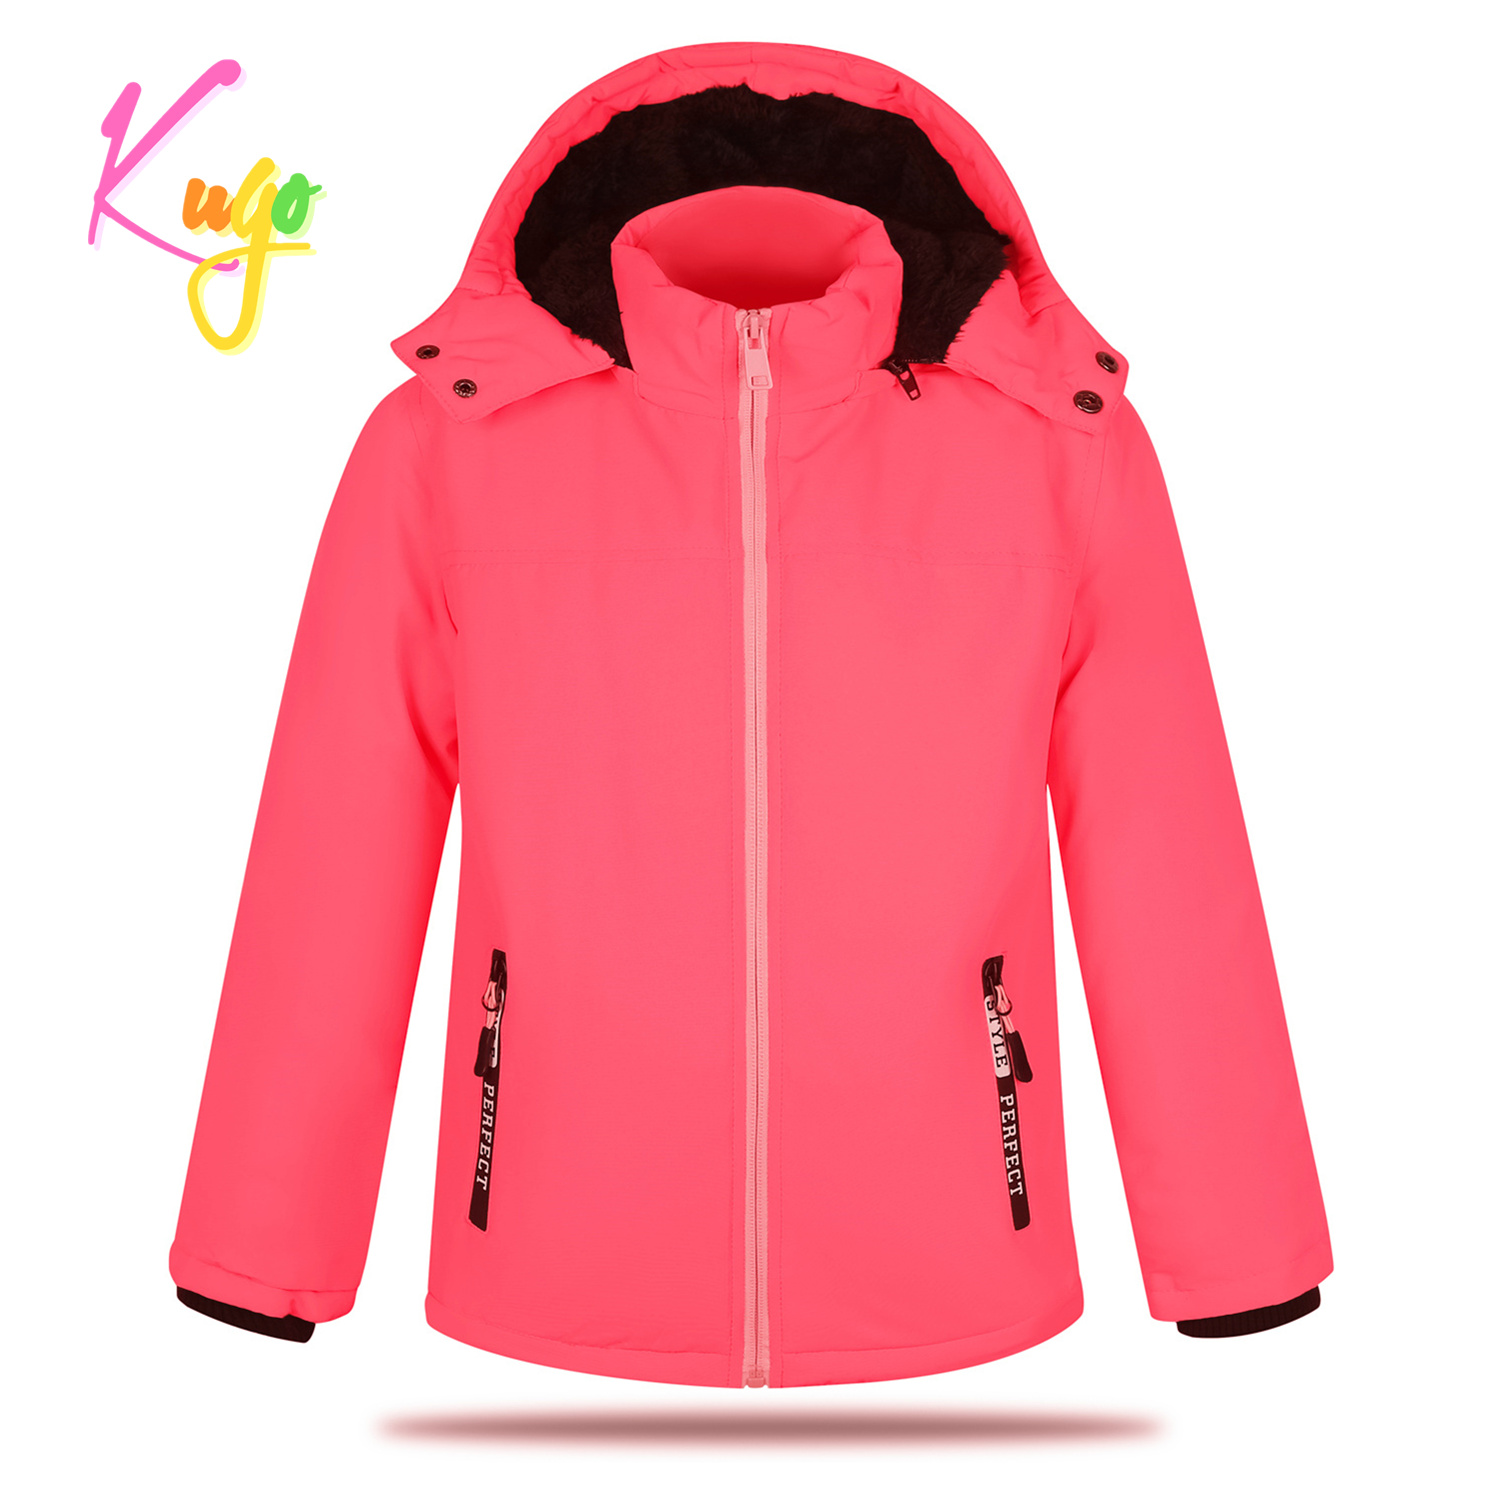 Dívčí zimní bunda - KUGO BU605, neonově lososová Barva: Lososová, Velikost: 110